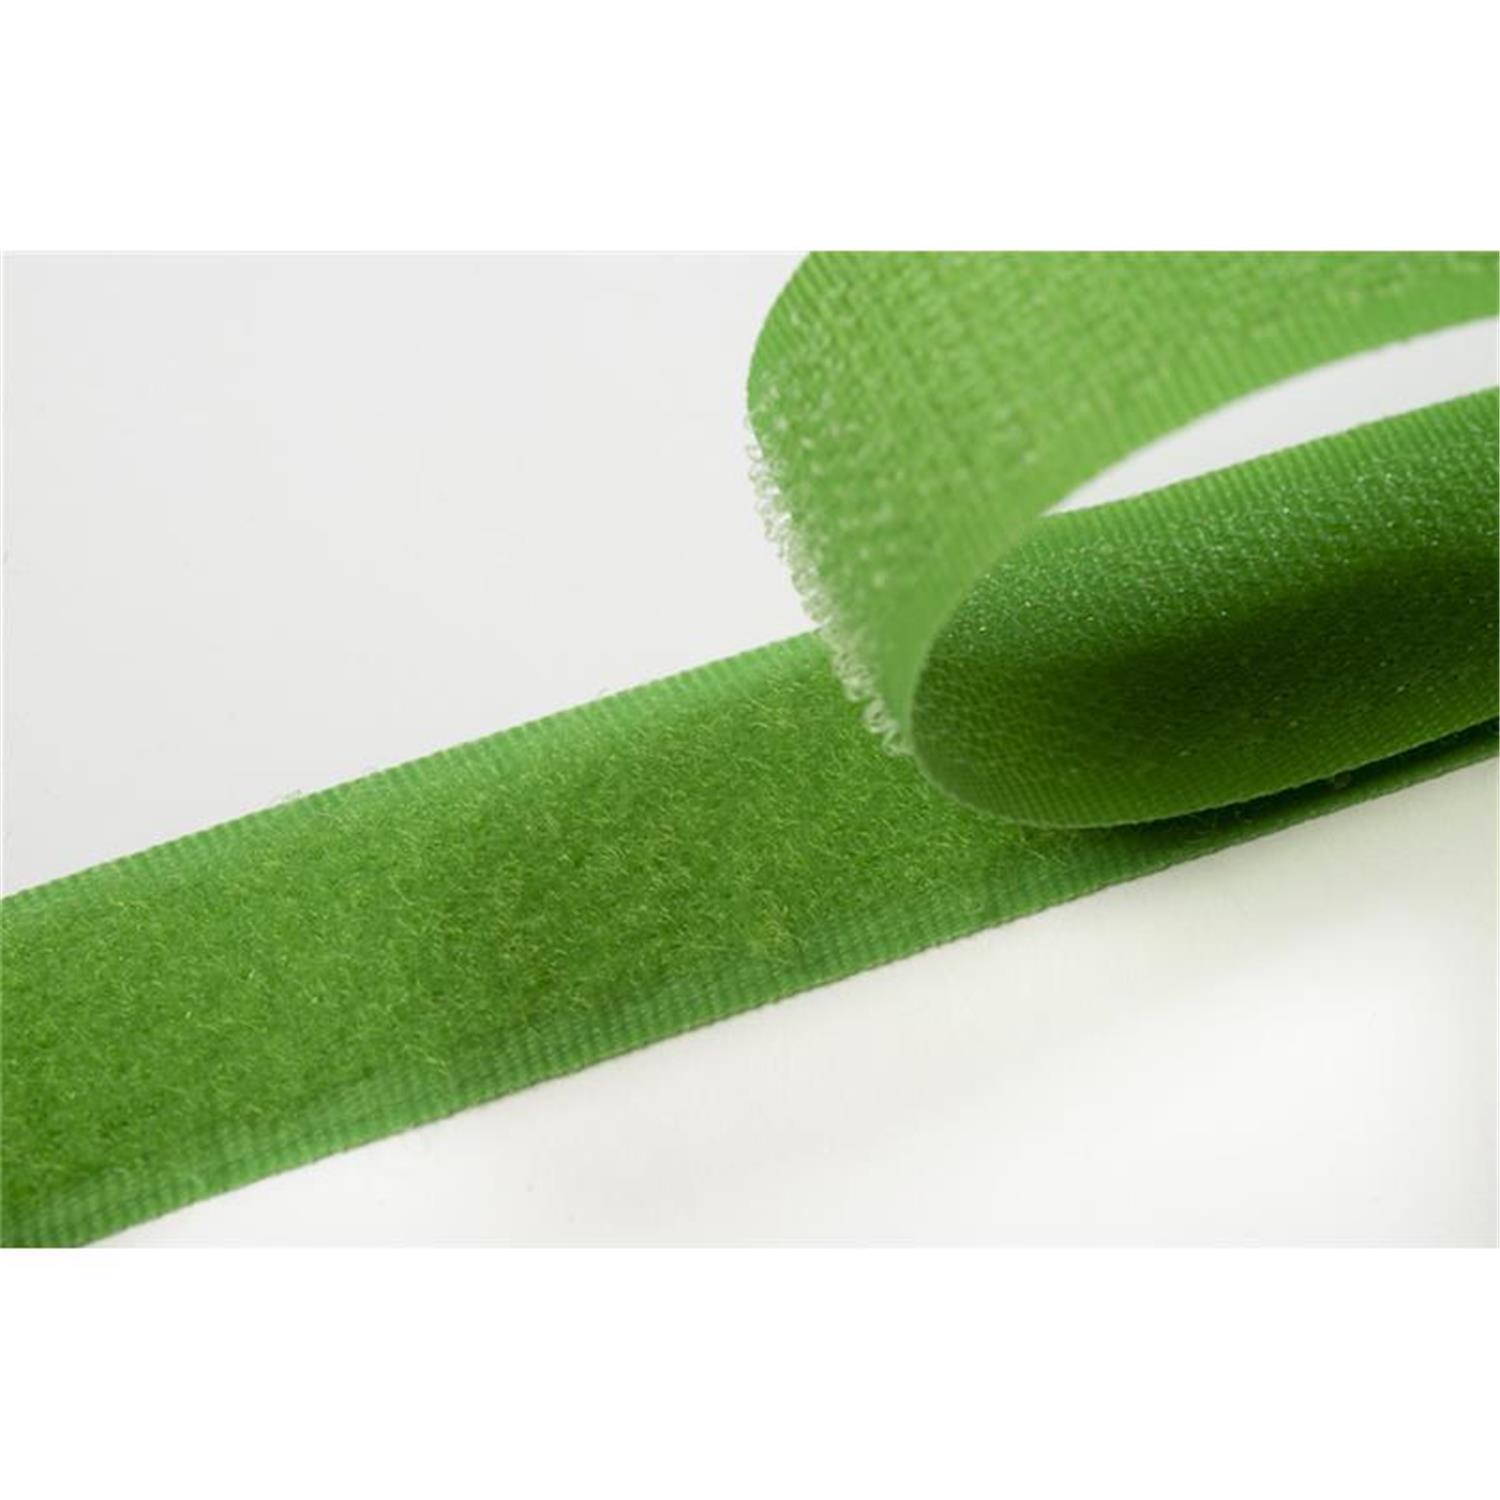 Klettband zum aufnähen, 50 mm, frühlingsgrün #08 4 Meter